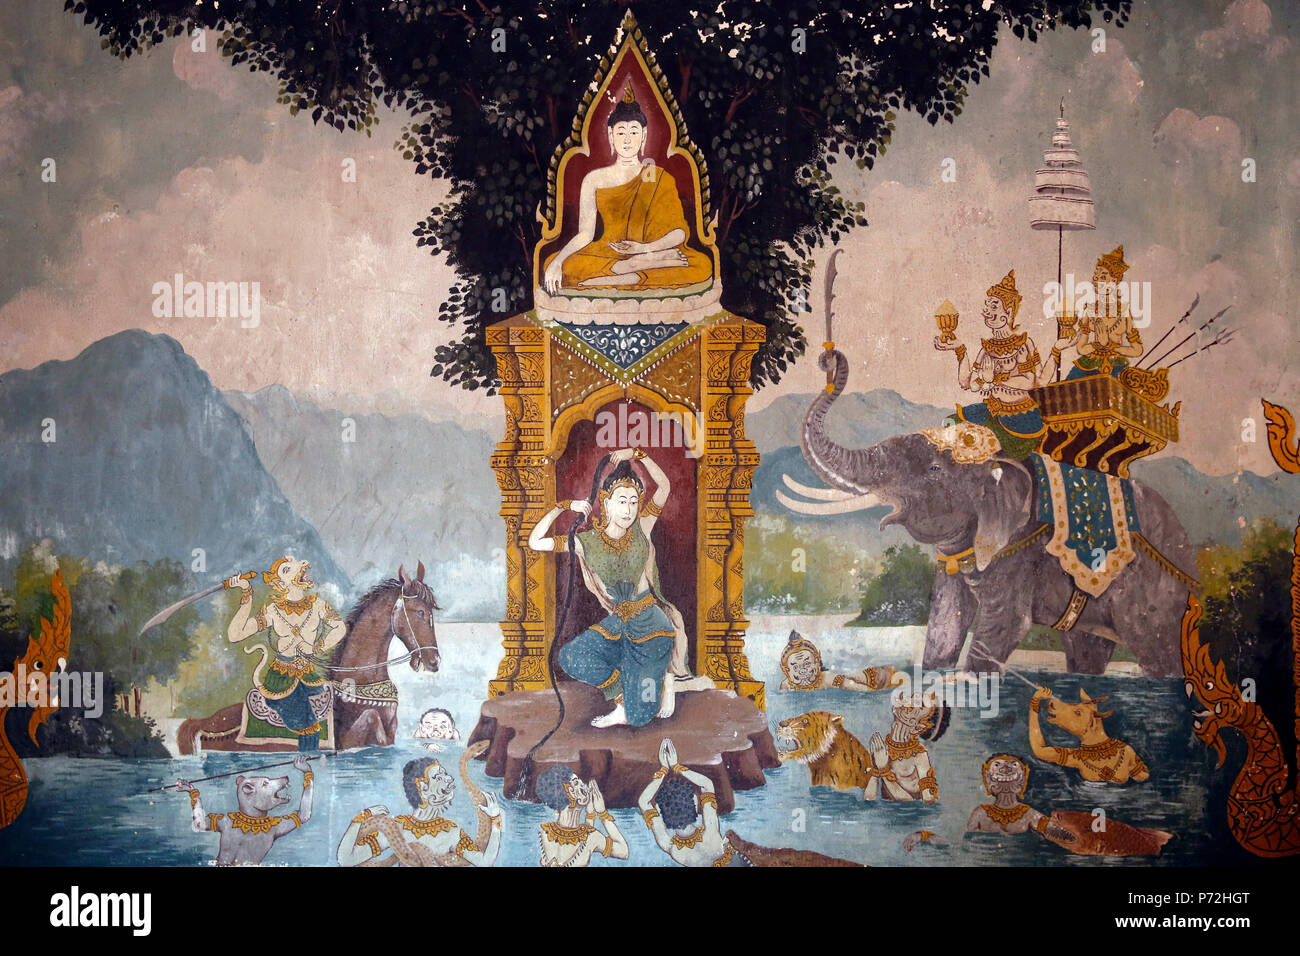 Phra Mae Thorani torsioni i suoi capelli lunghi e torrenti di acqua crea un diluvio, Wat Phra Doi Suthep, Chiang Mai, Thailandia, Sud-est asiatico, in Asia Foto Stock